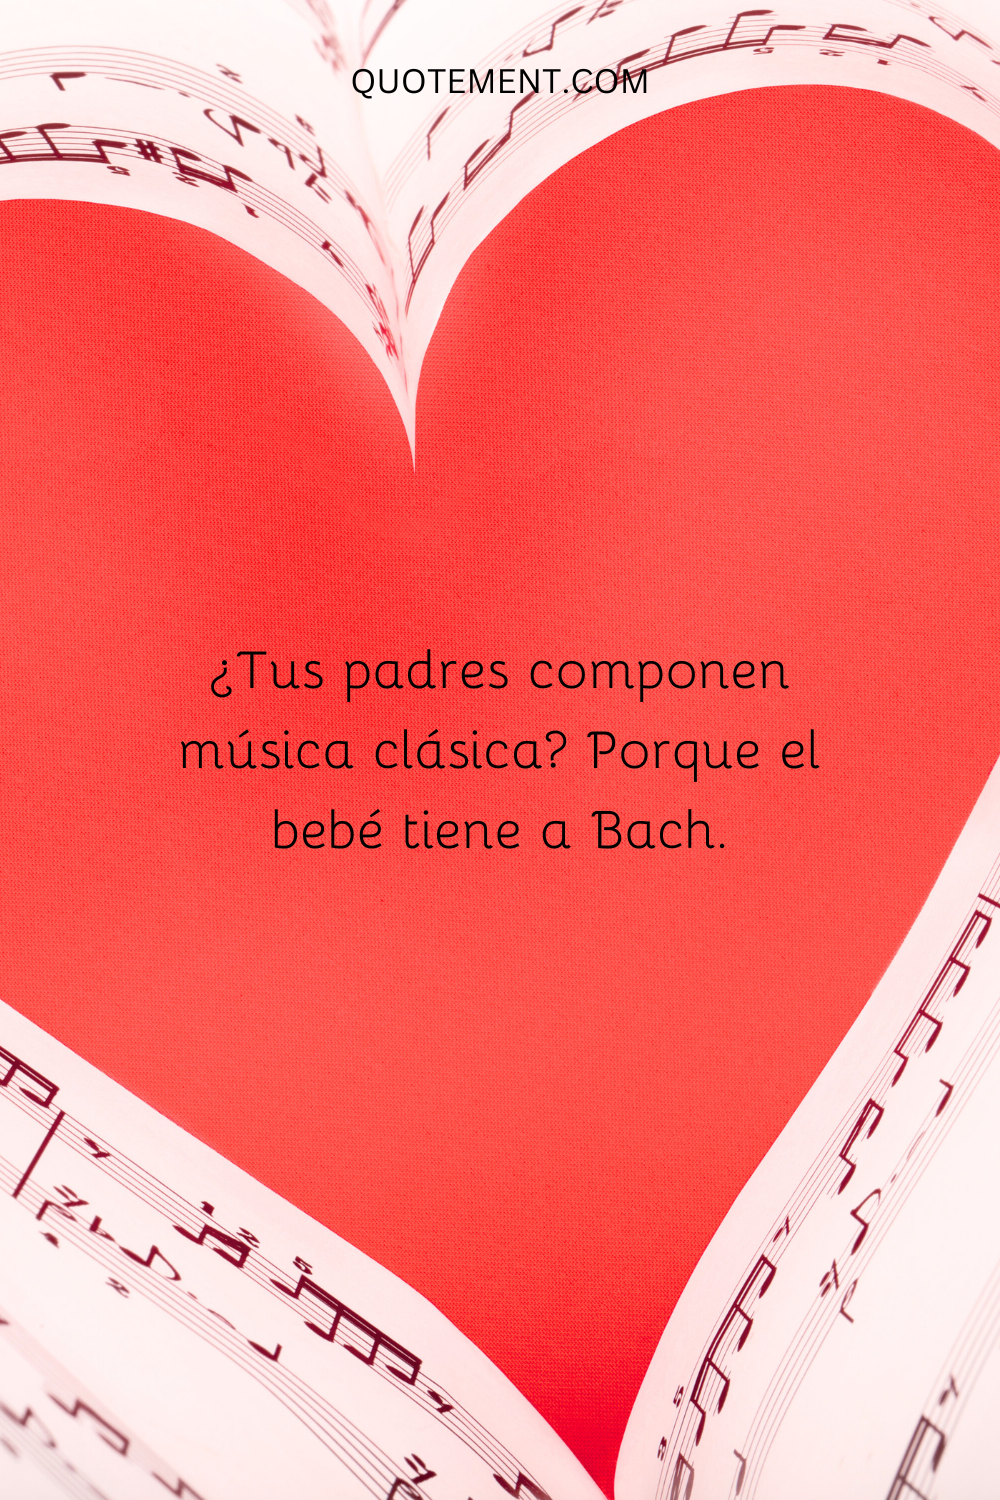 ¿Tus padres componen música clásica porque el bebé tiene a Bach?